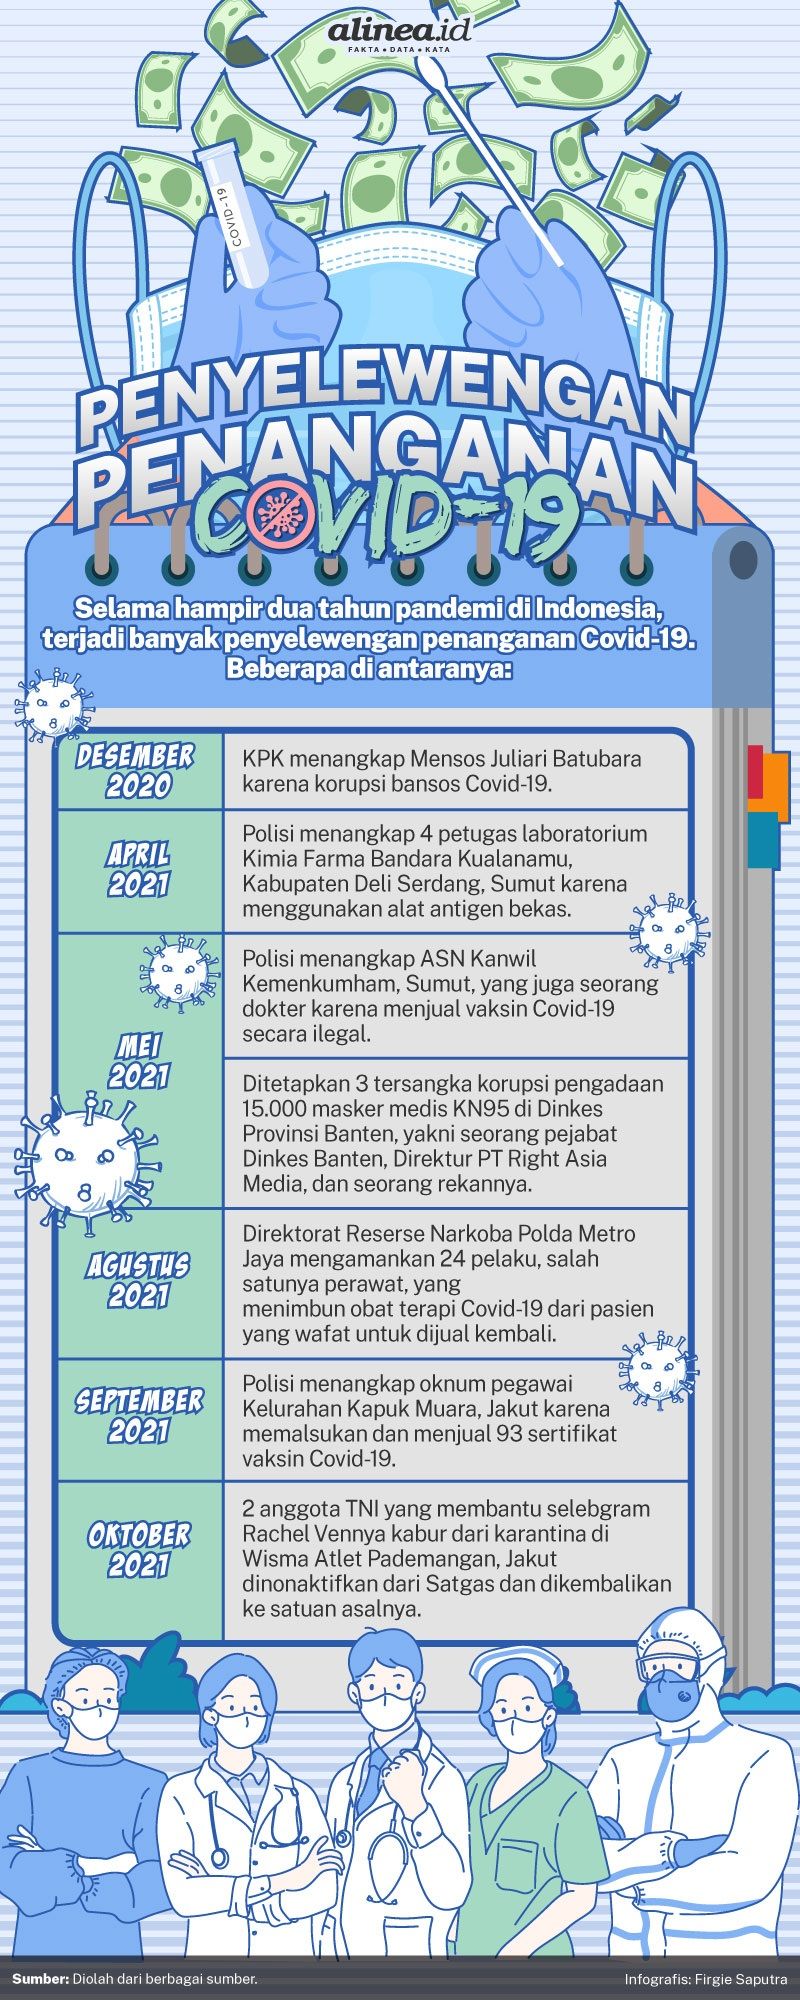 Infografik penyelewengan penanganan pandemi Covid-19. Alinea.id/Firgie Saputra.